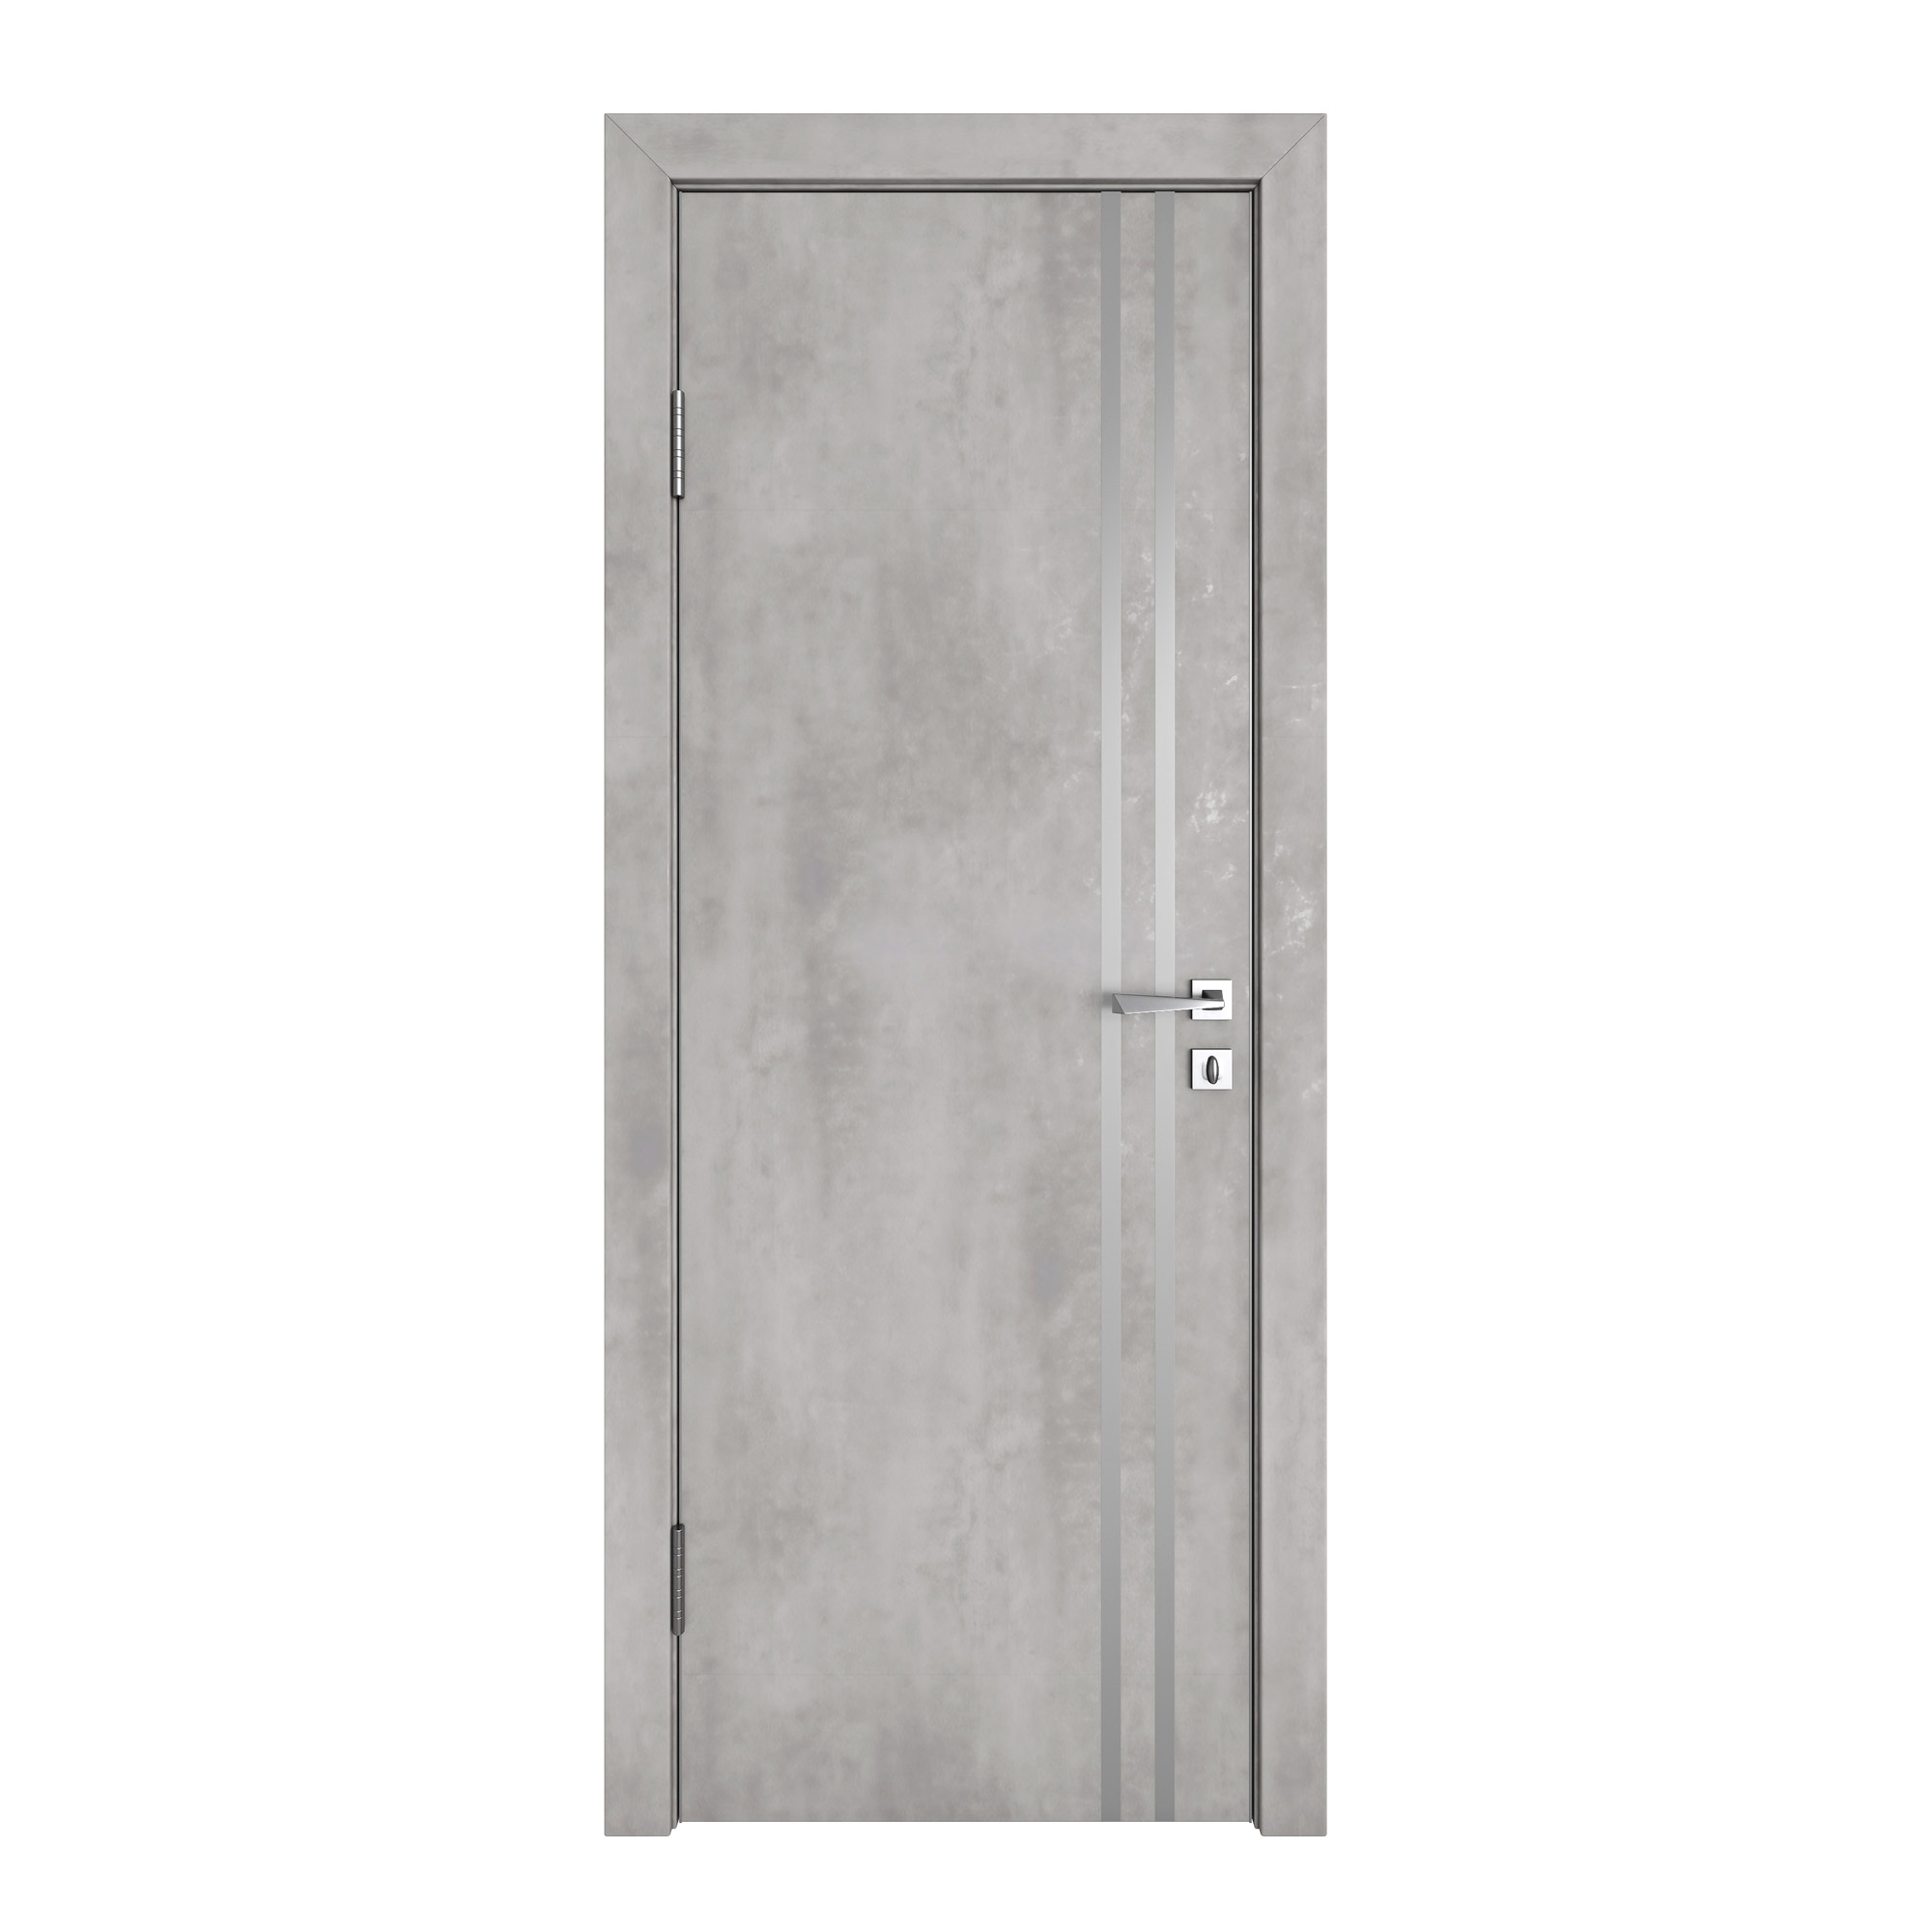 фото Межкомнатная дверь дг-506 бетон светлый 200х90 дверная линия